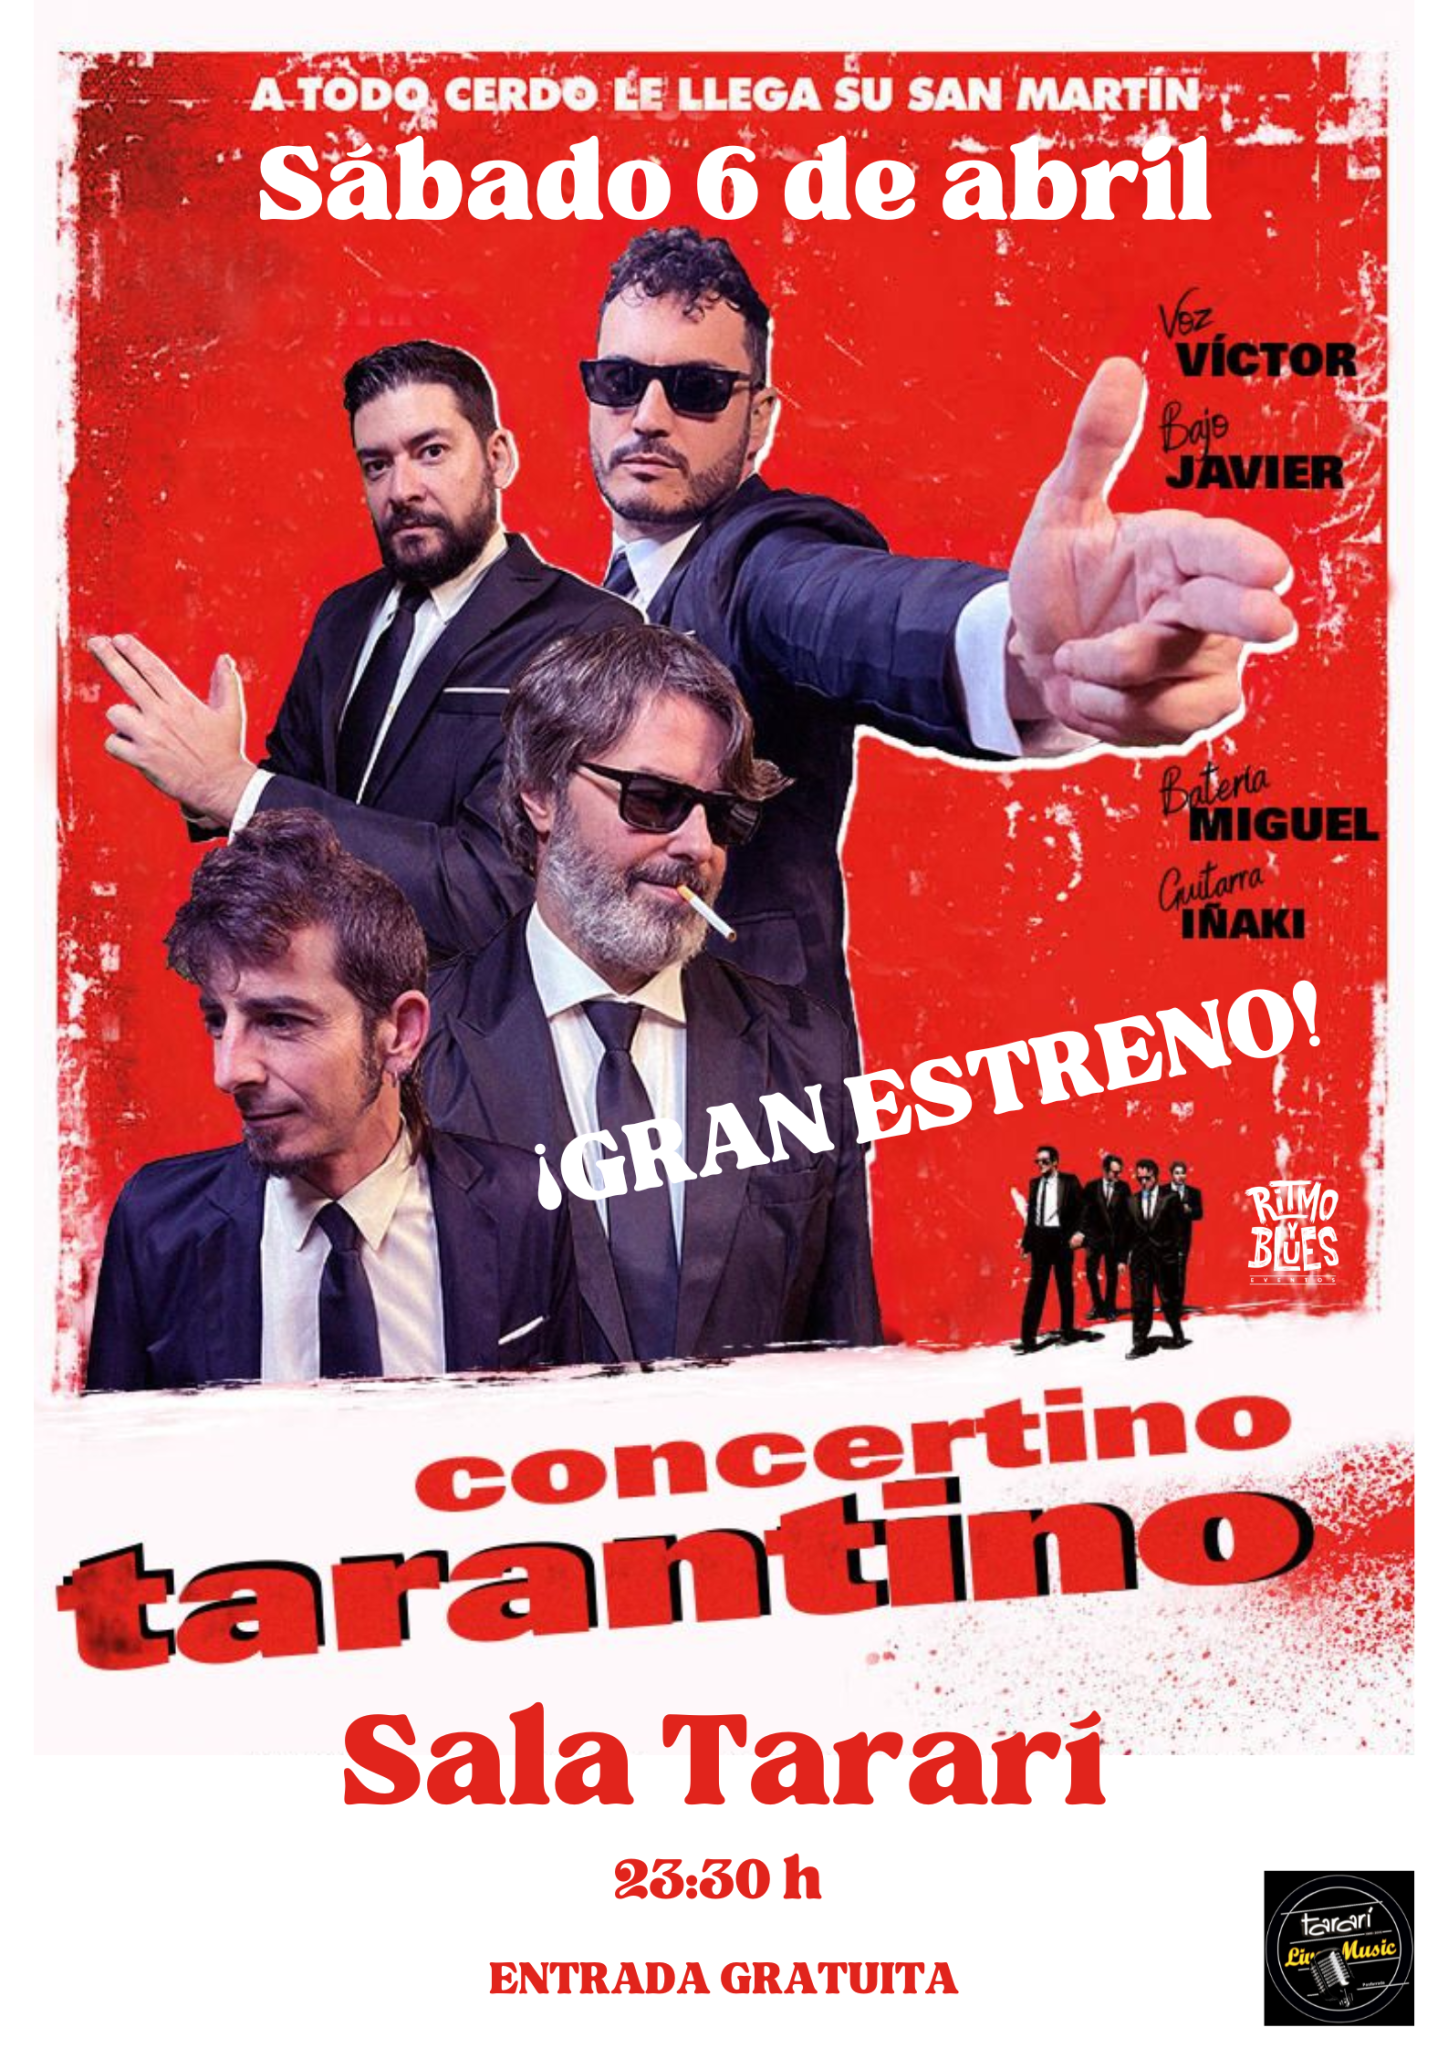 Concertino Tarantino nos hará bailar en el Tararí al ritmo de versiones de las mejores películas del genial director 2